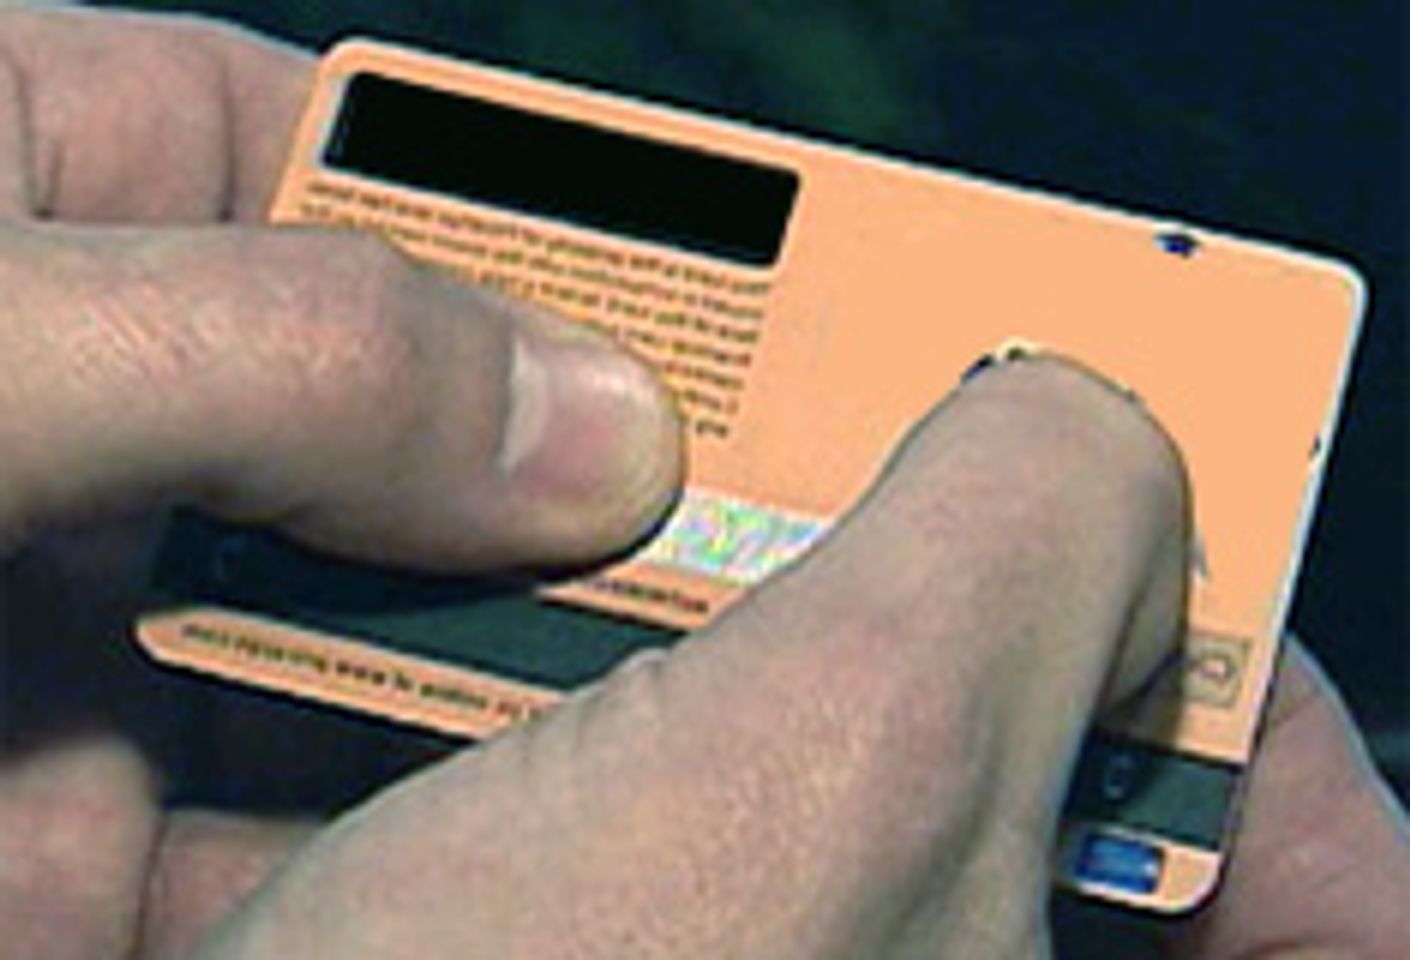 DSMcard: Adult Online Credit Card Rocks